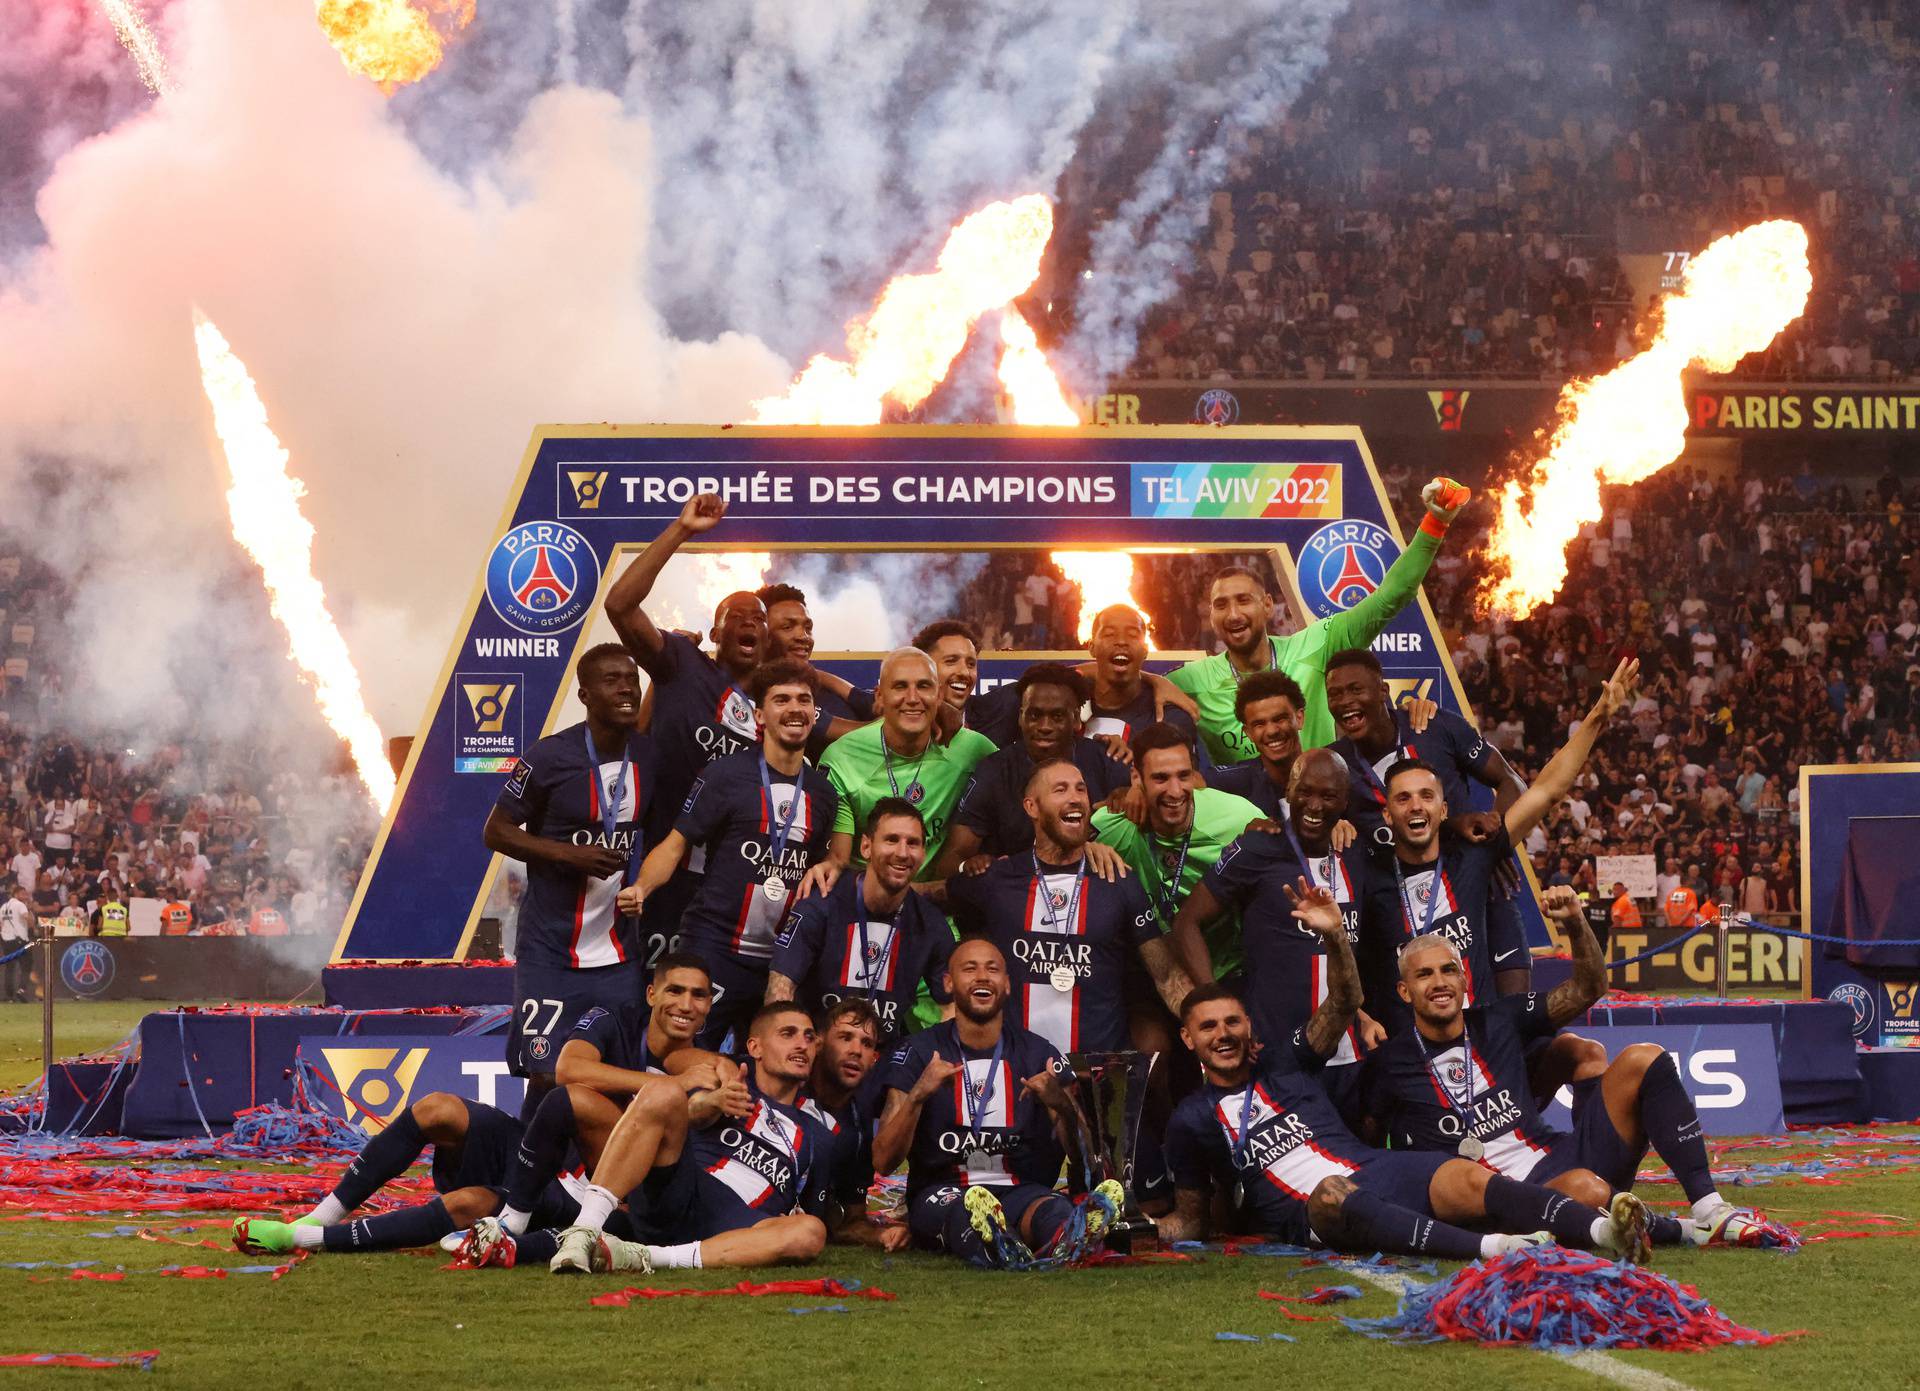 Trophee des Champions - Paris St Germain v Nantes